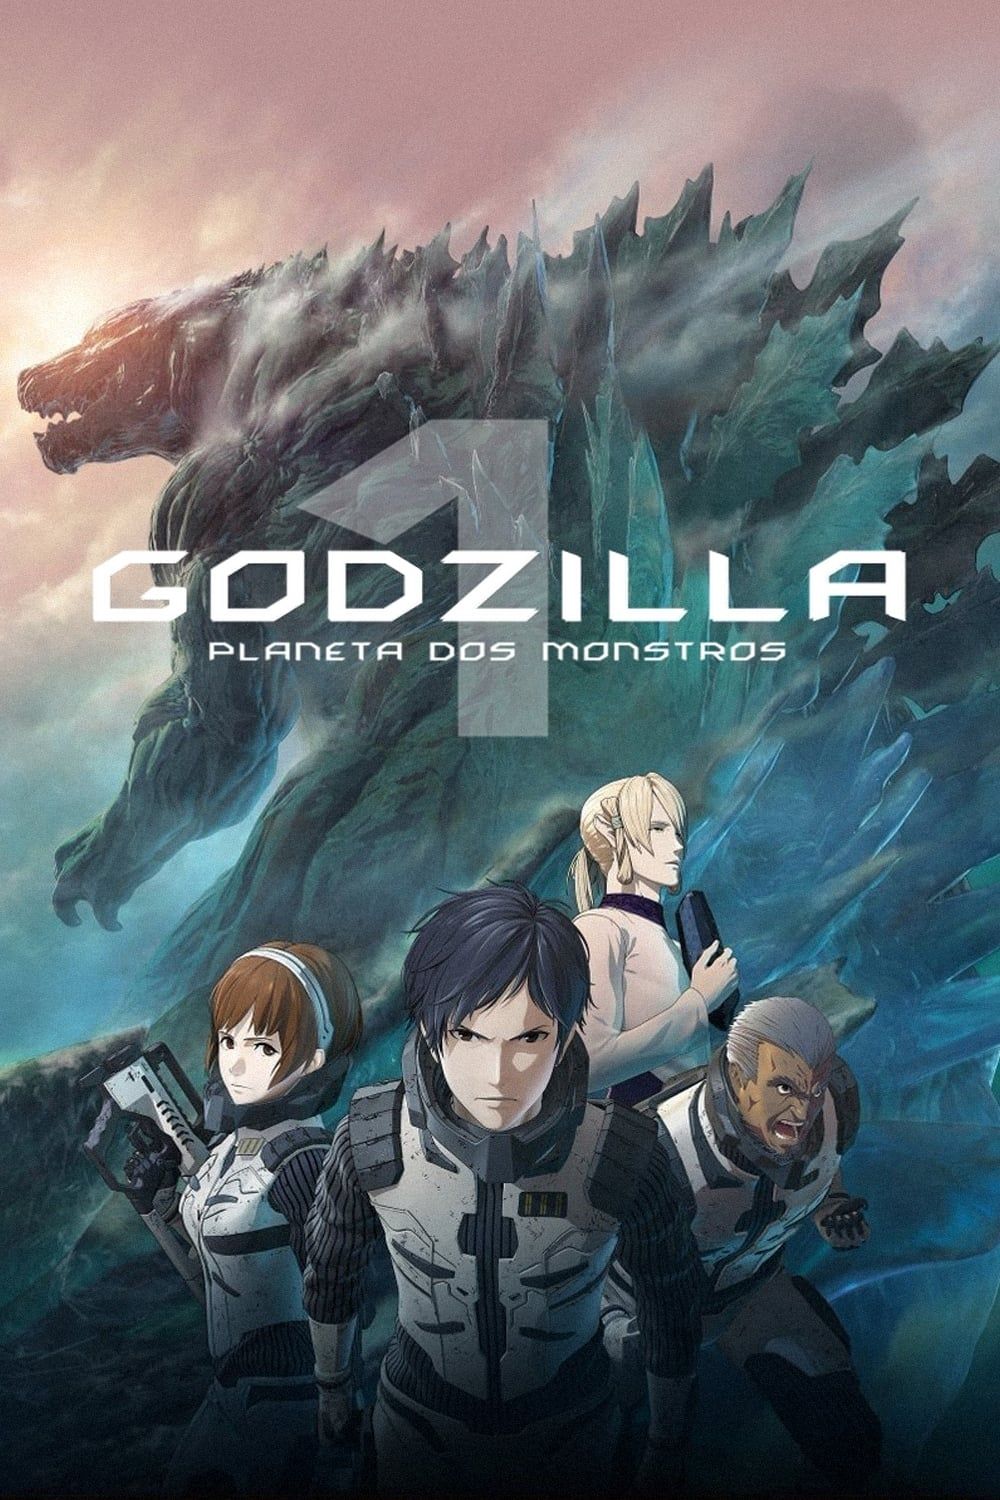 Godzilla 2: Kessen Kidou Zoushoku Toshi (Dub)